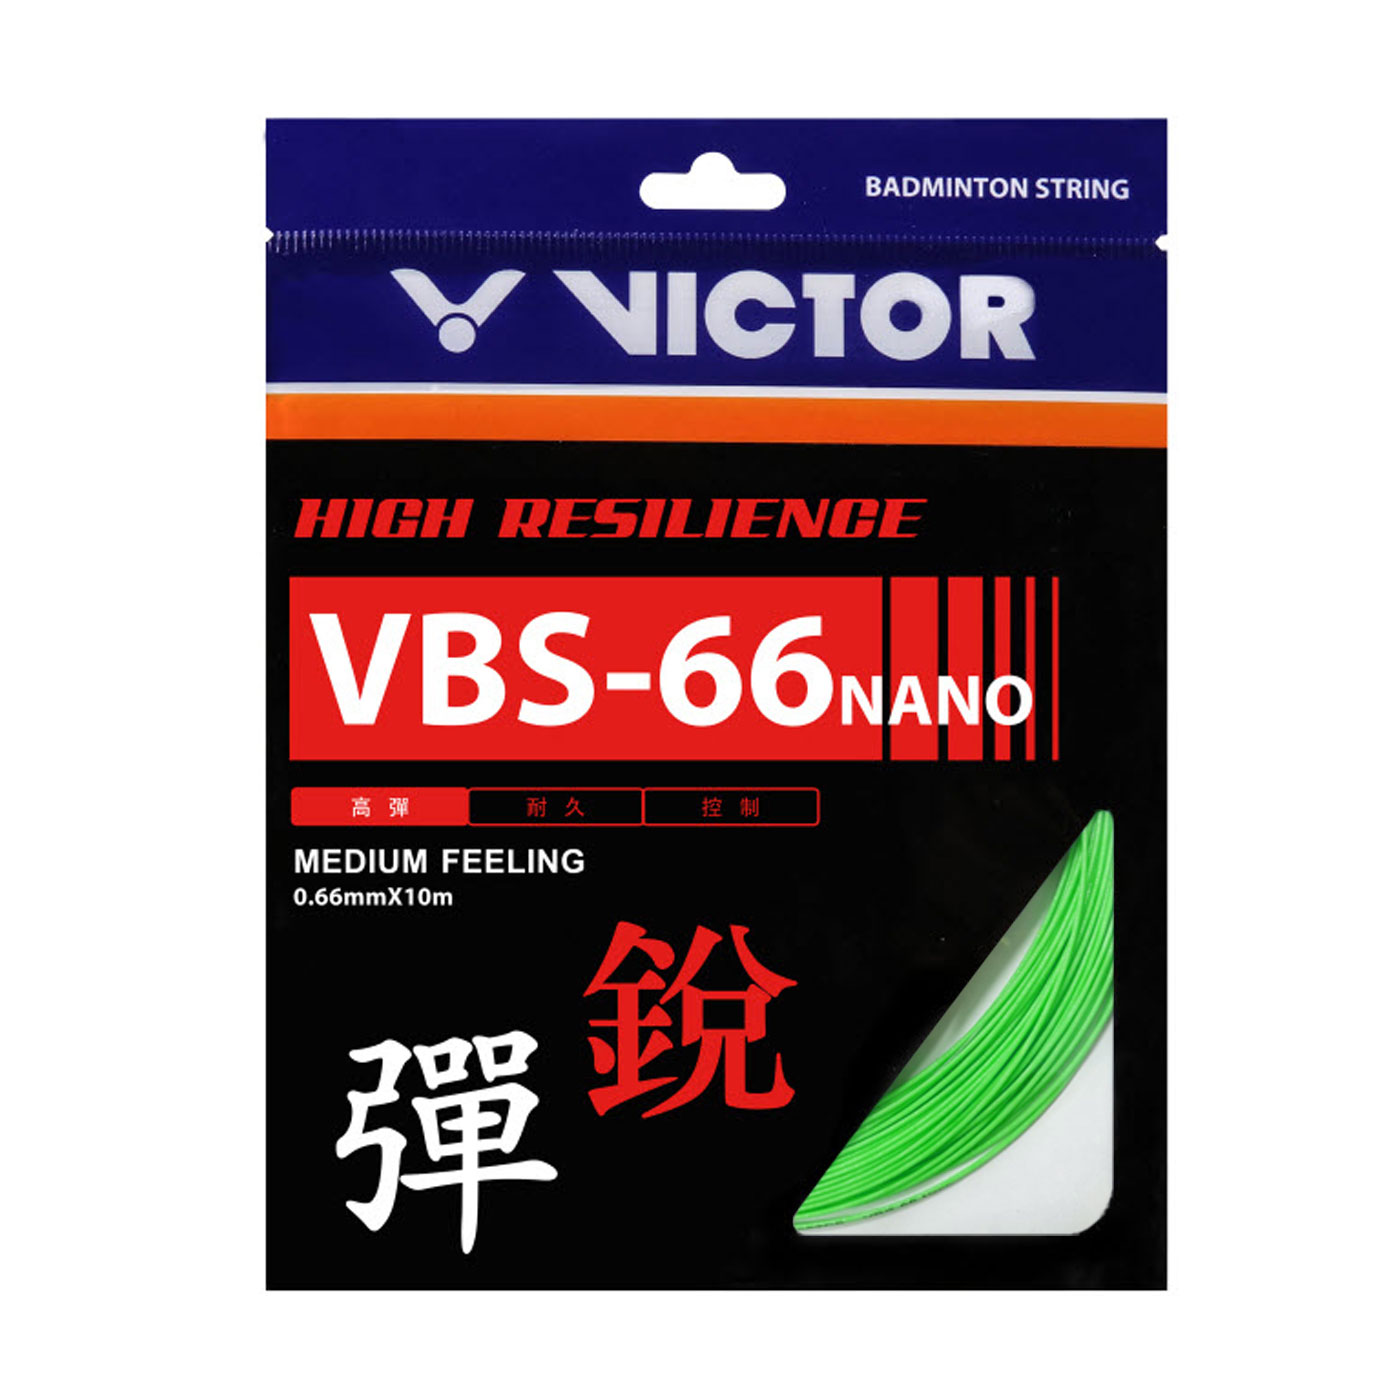 VICTOR 特定-高彈羽拍線-銳 VBS-66N-G - 綠